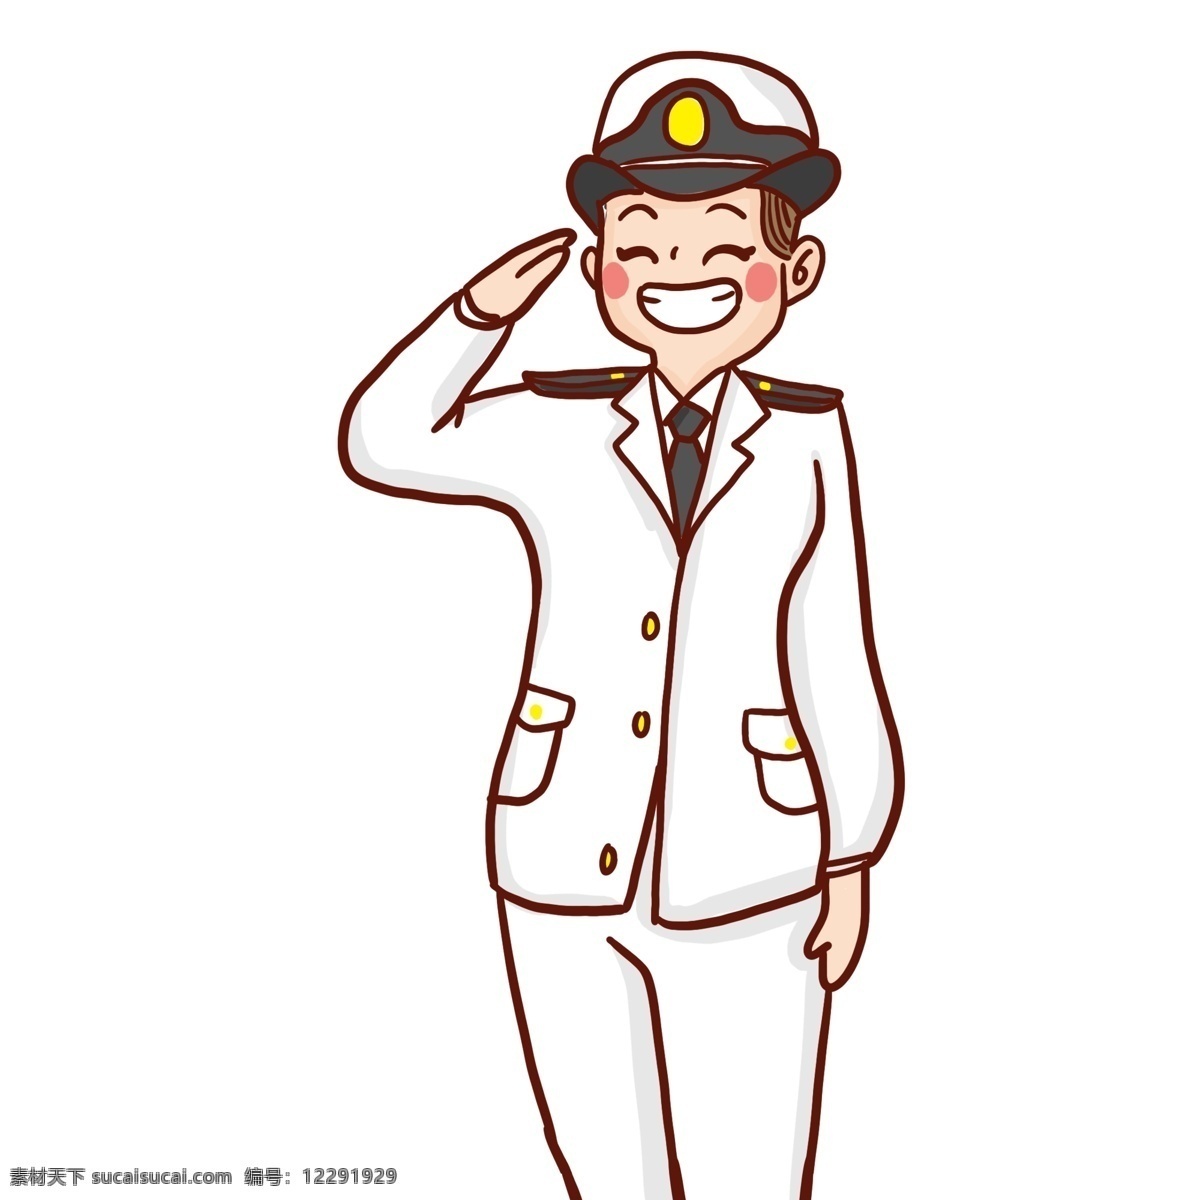 可爱 开心 笑 海军 军官 卡通 憨笑 警察 敬礼 插画 人物